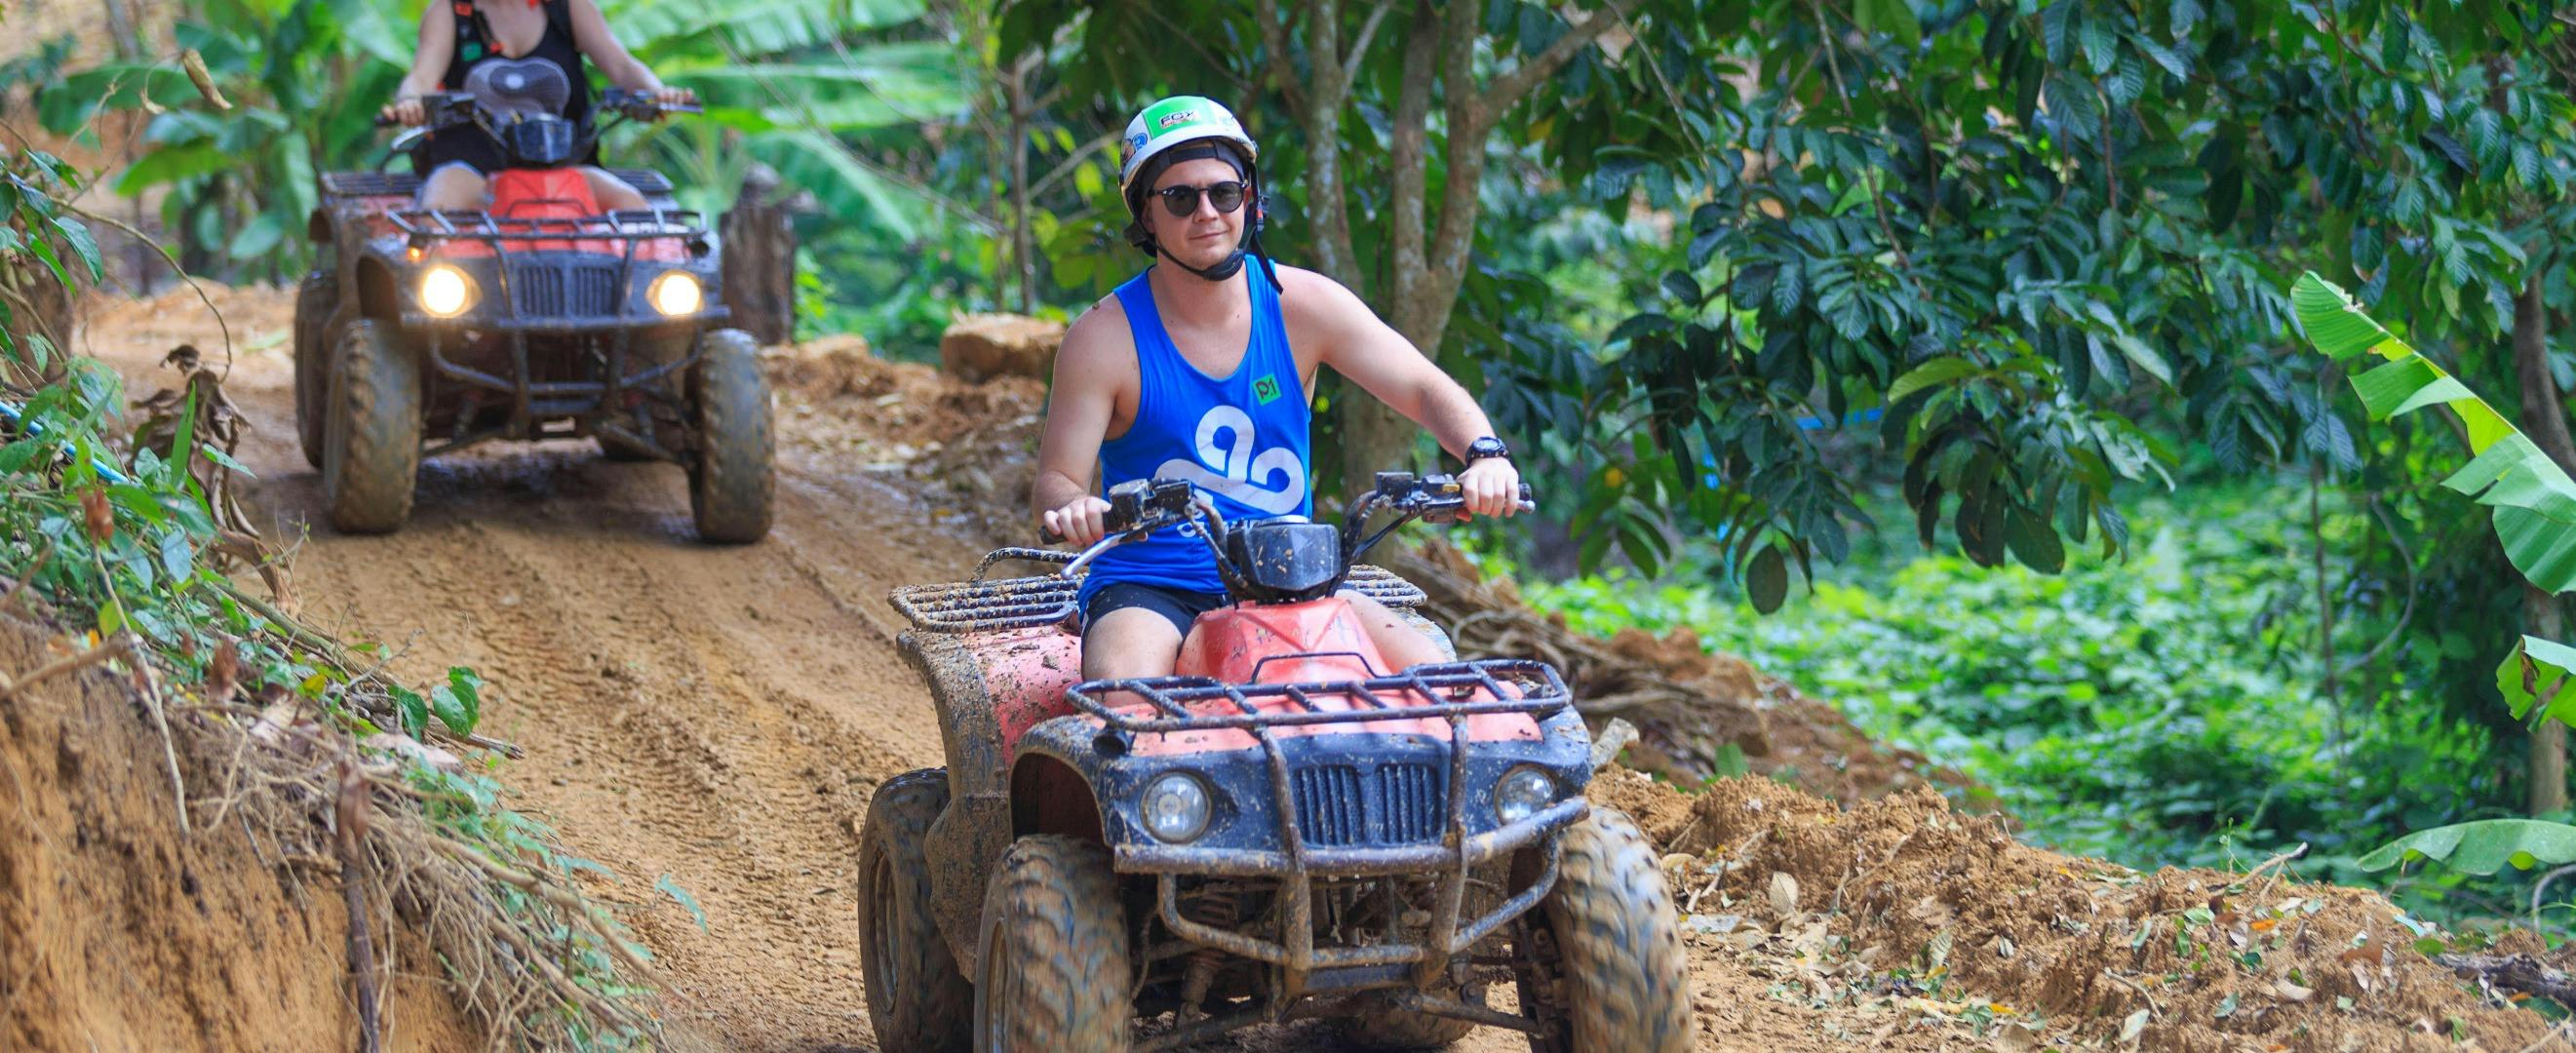 Imagen del tour: Aventuras en quad Phuket Paradise con actividades opcionales de tirolina o con elefantes